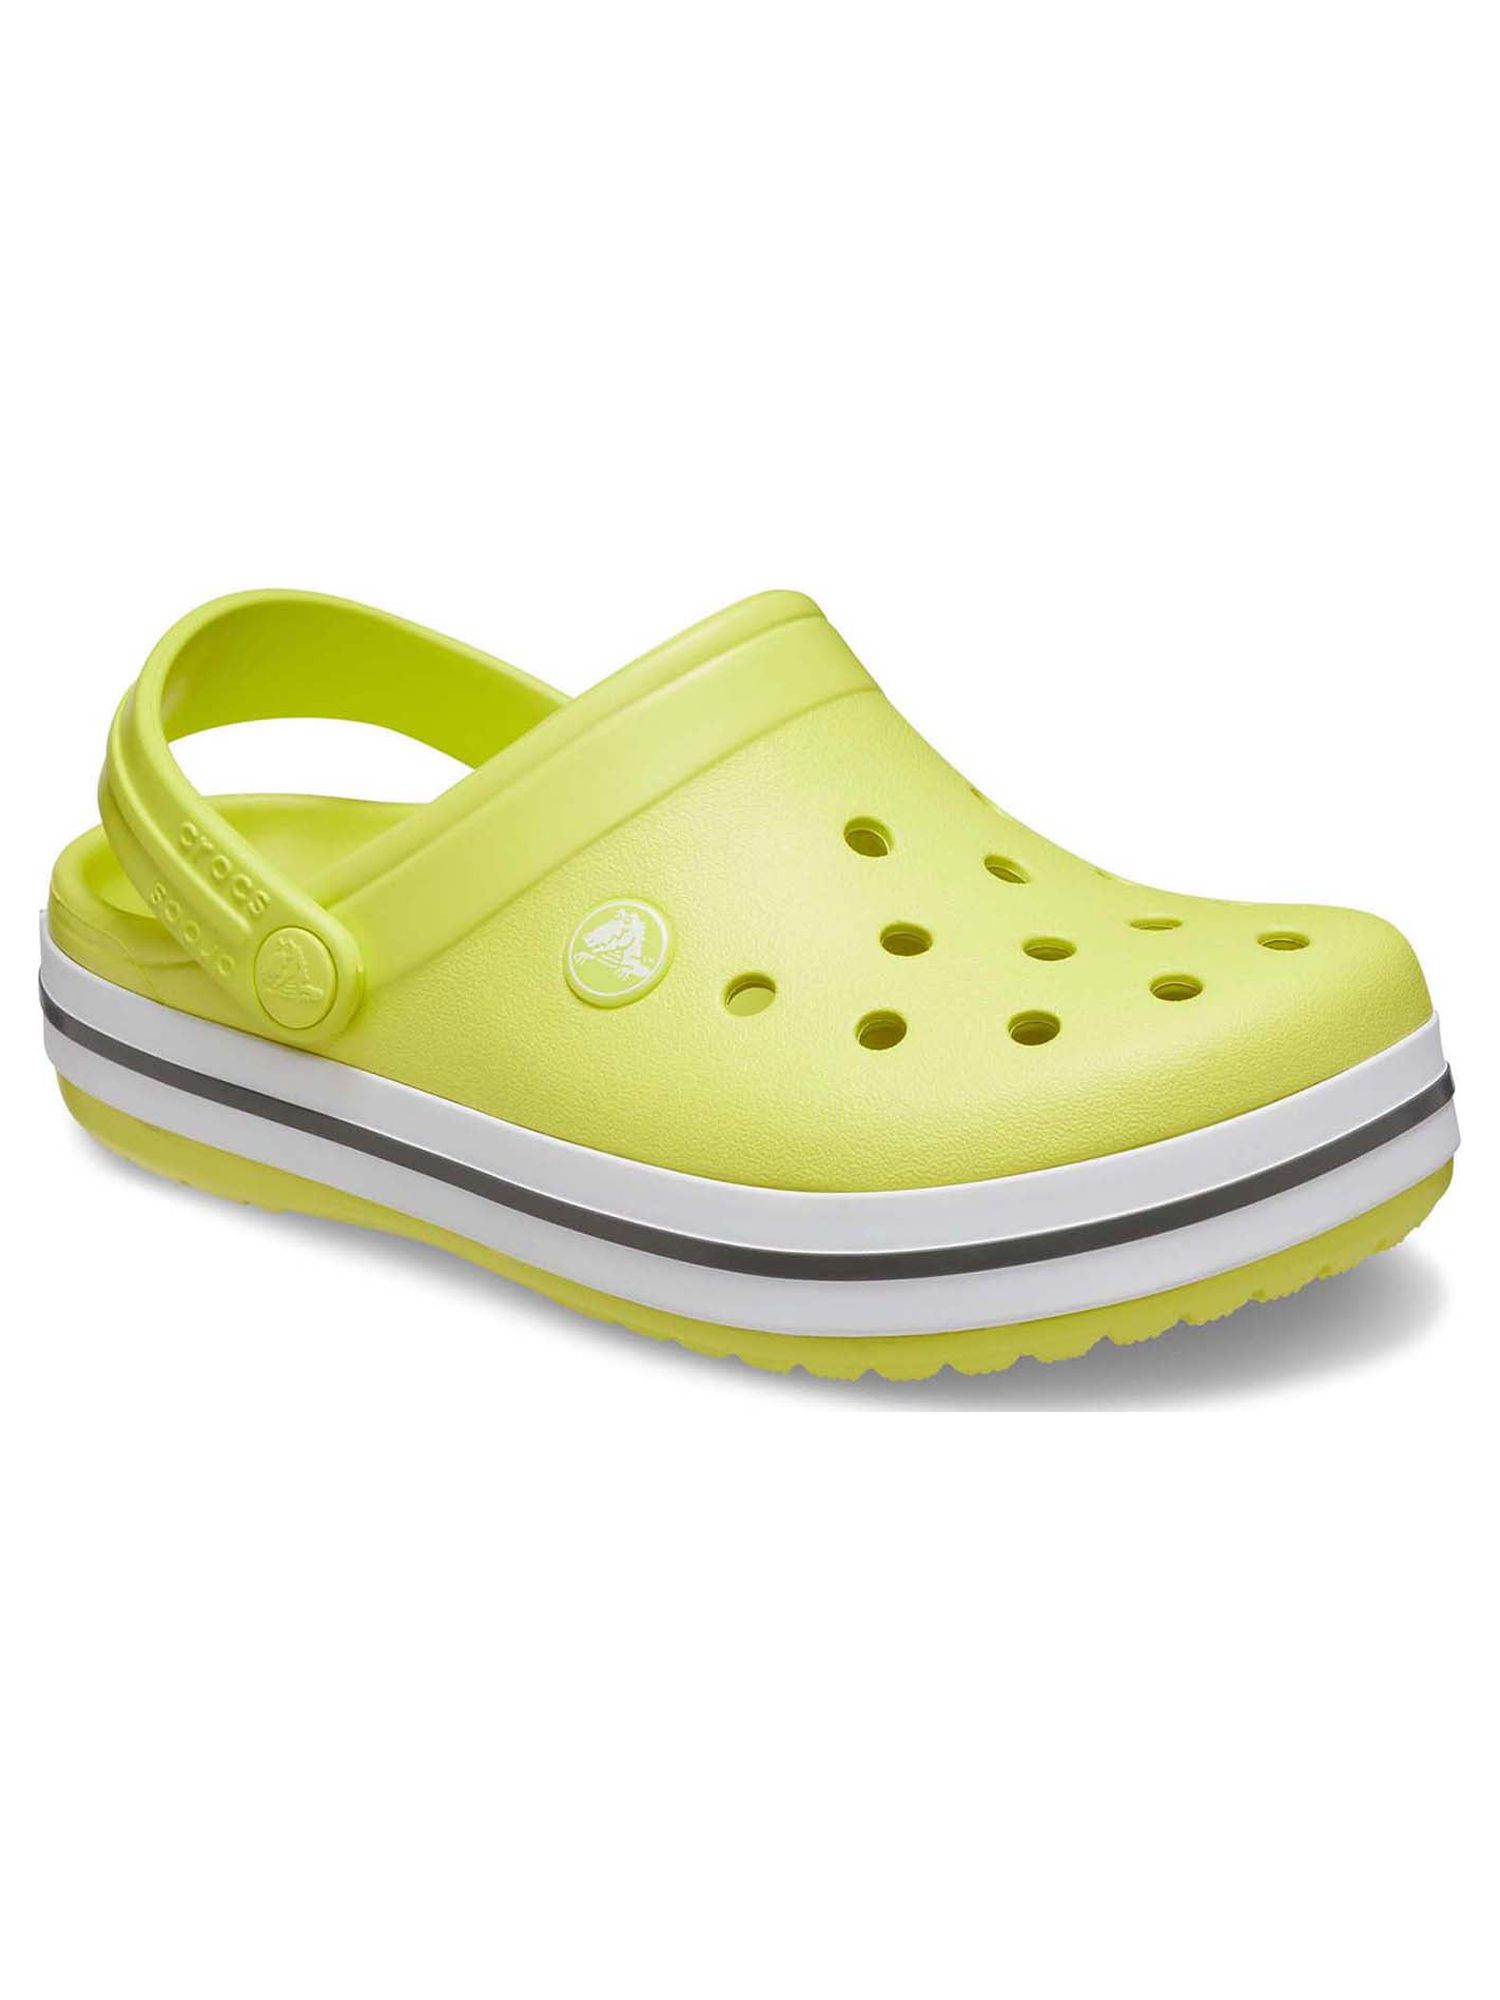 Crocs Toddler & Kids Crocband Clog - image 1 of 10